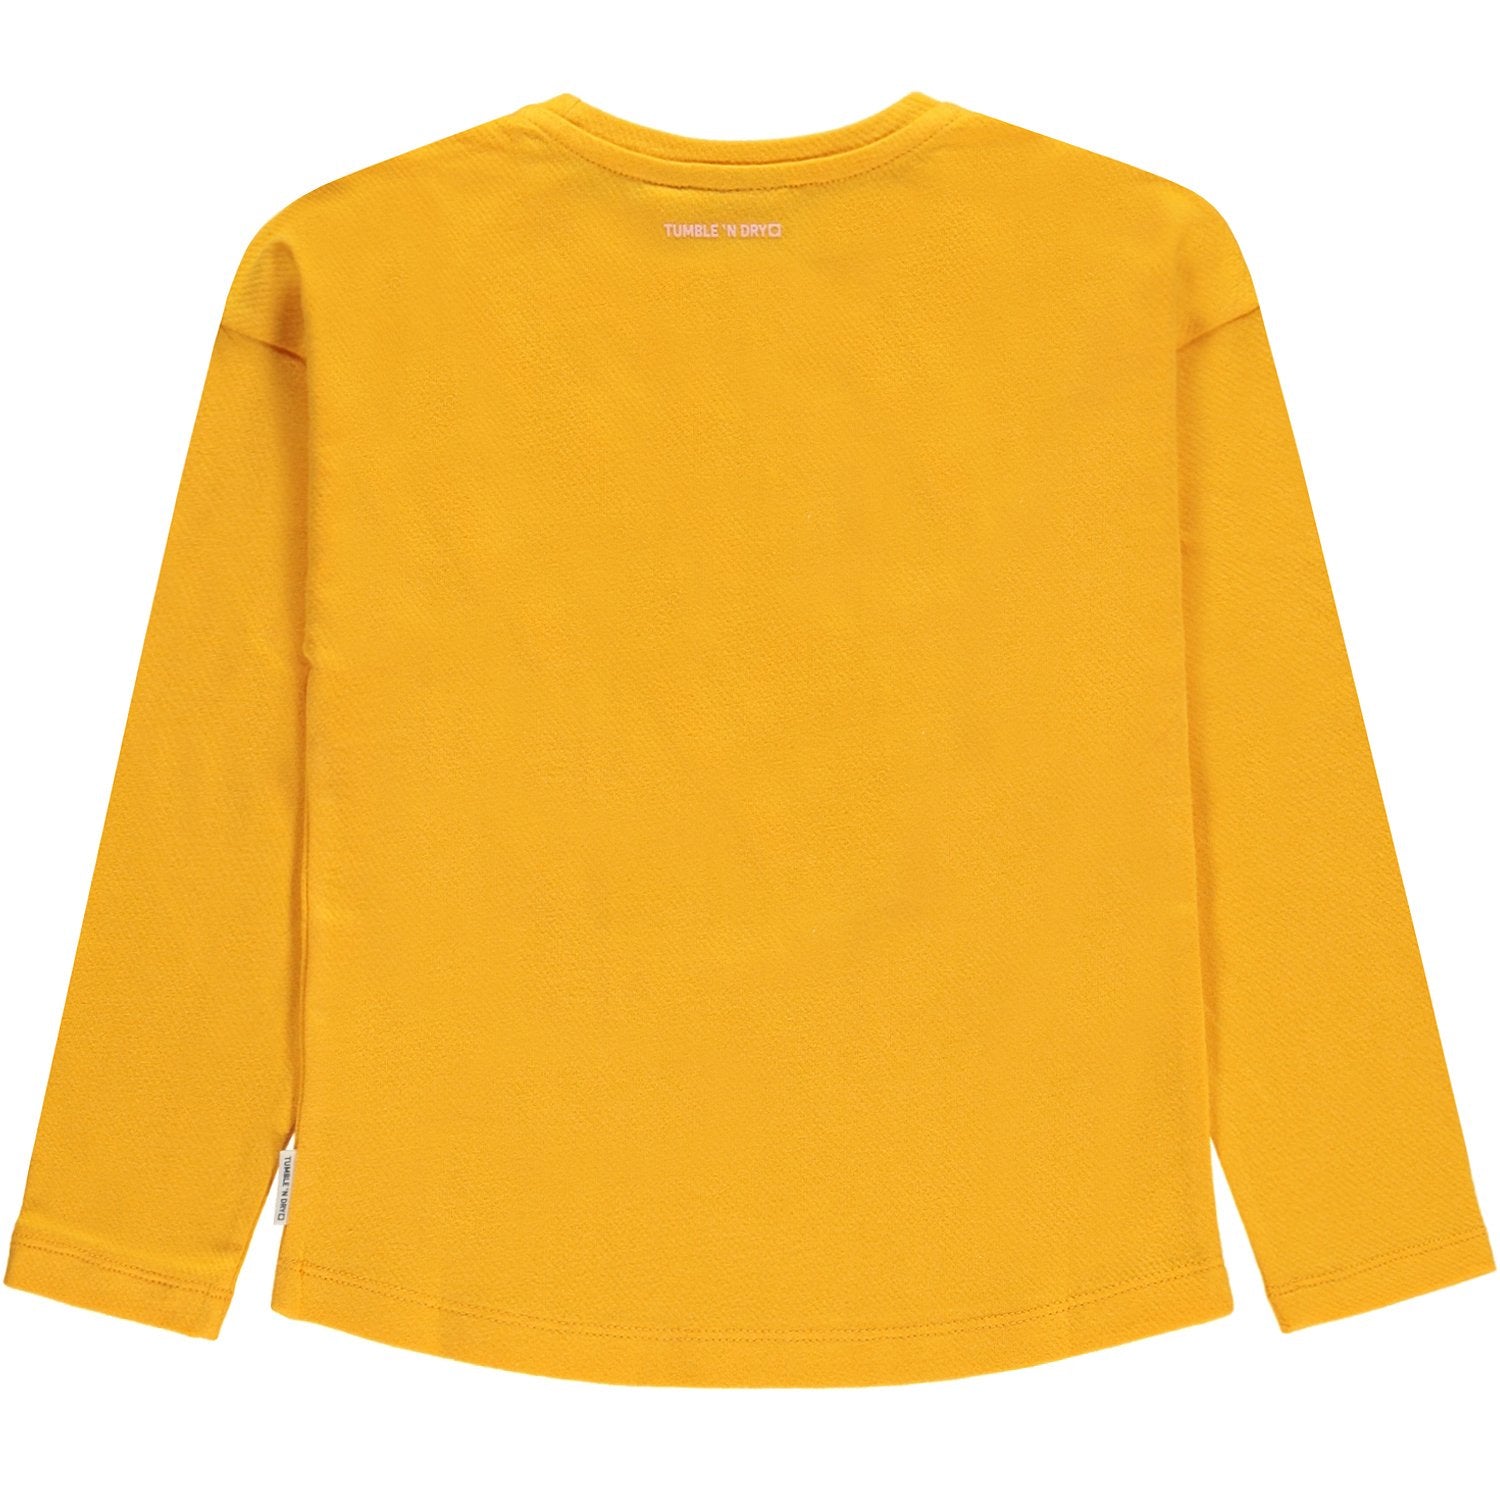 Meisjes T-shirt Lm O-hals van Tumble 'n Dry in de kleur Saffron in maat 134/140.